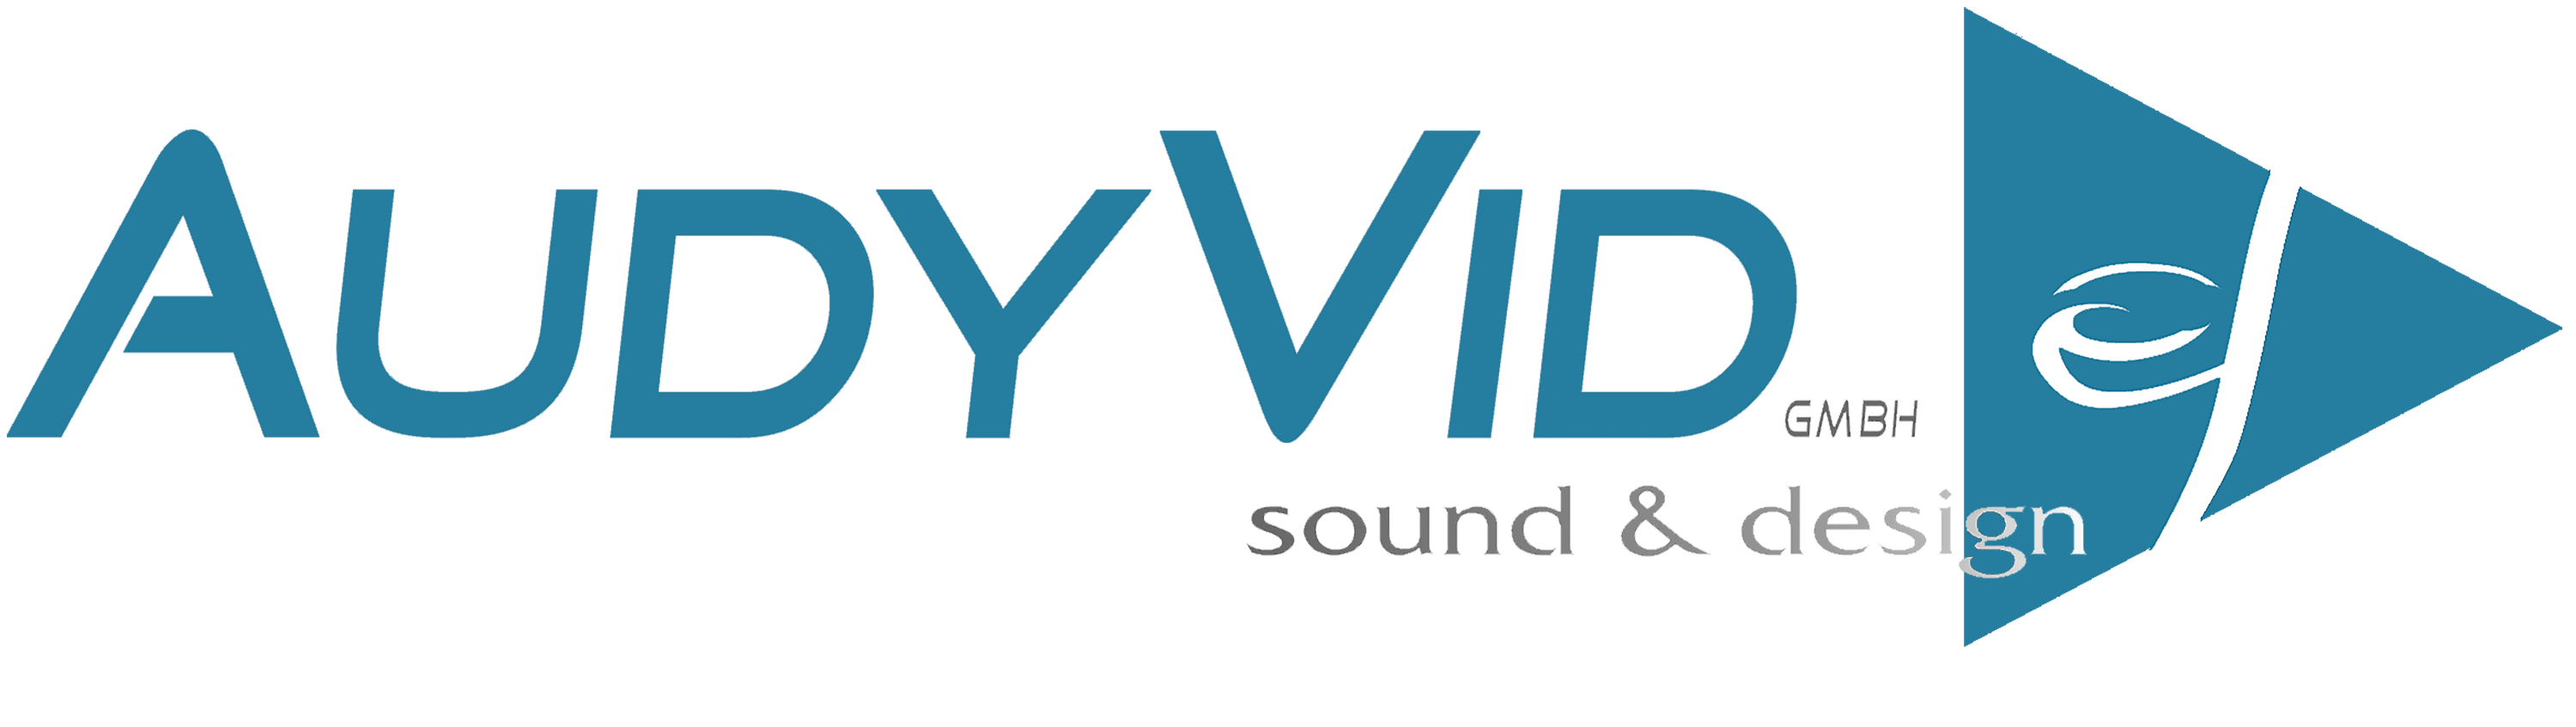 AudyVid GmbH sound & design